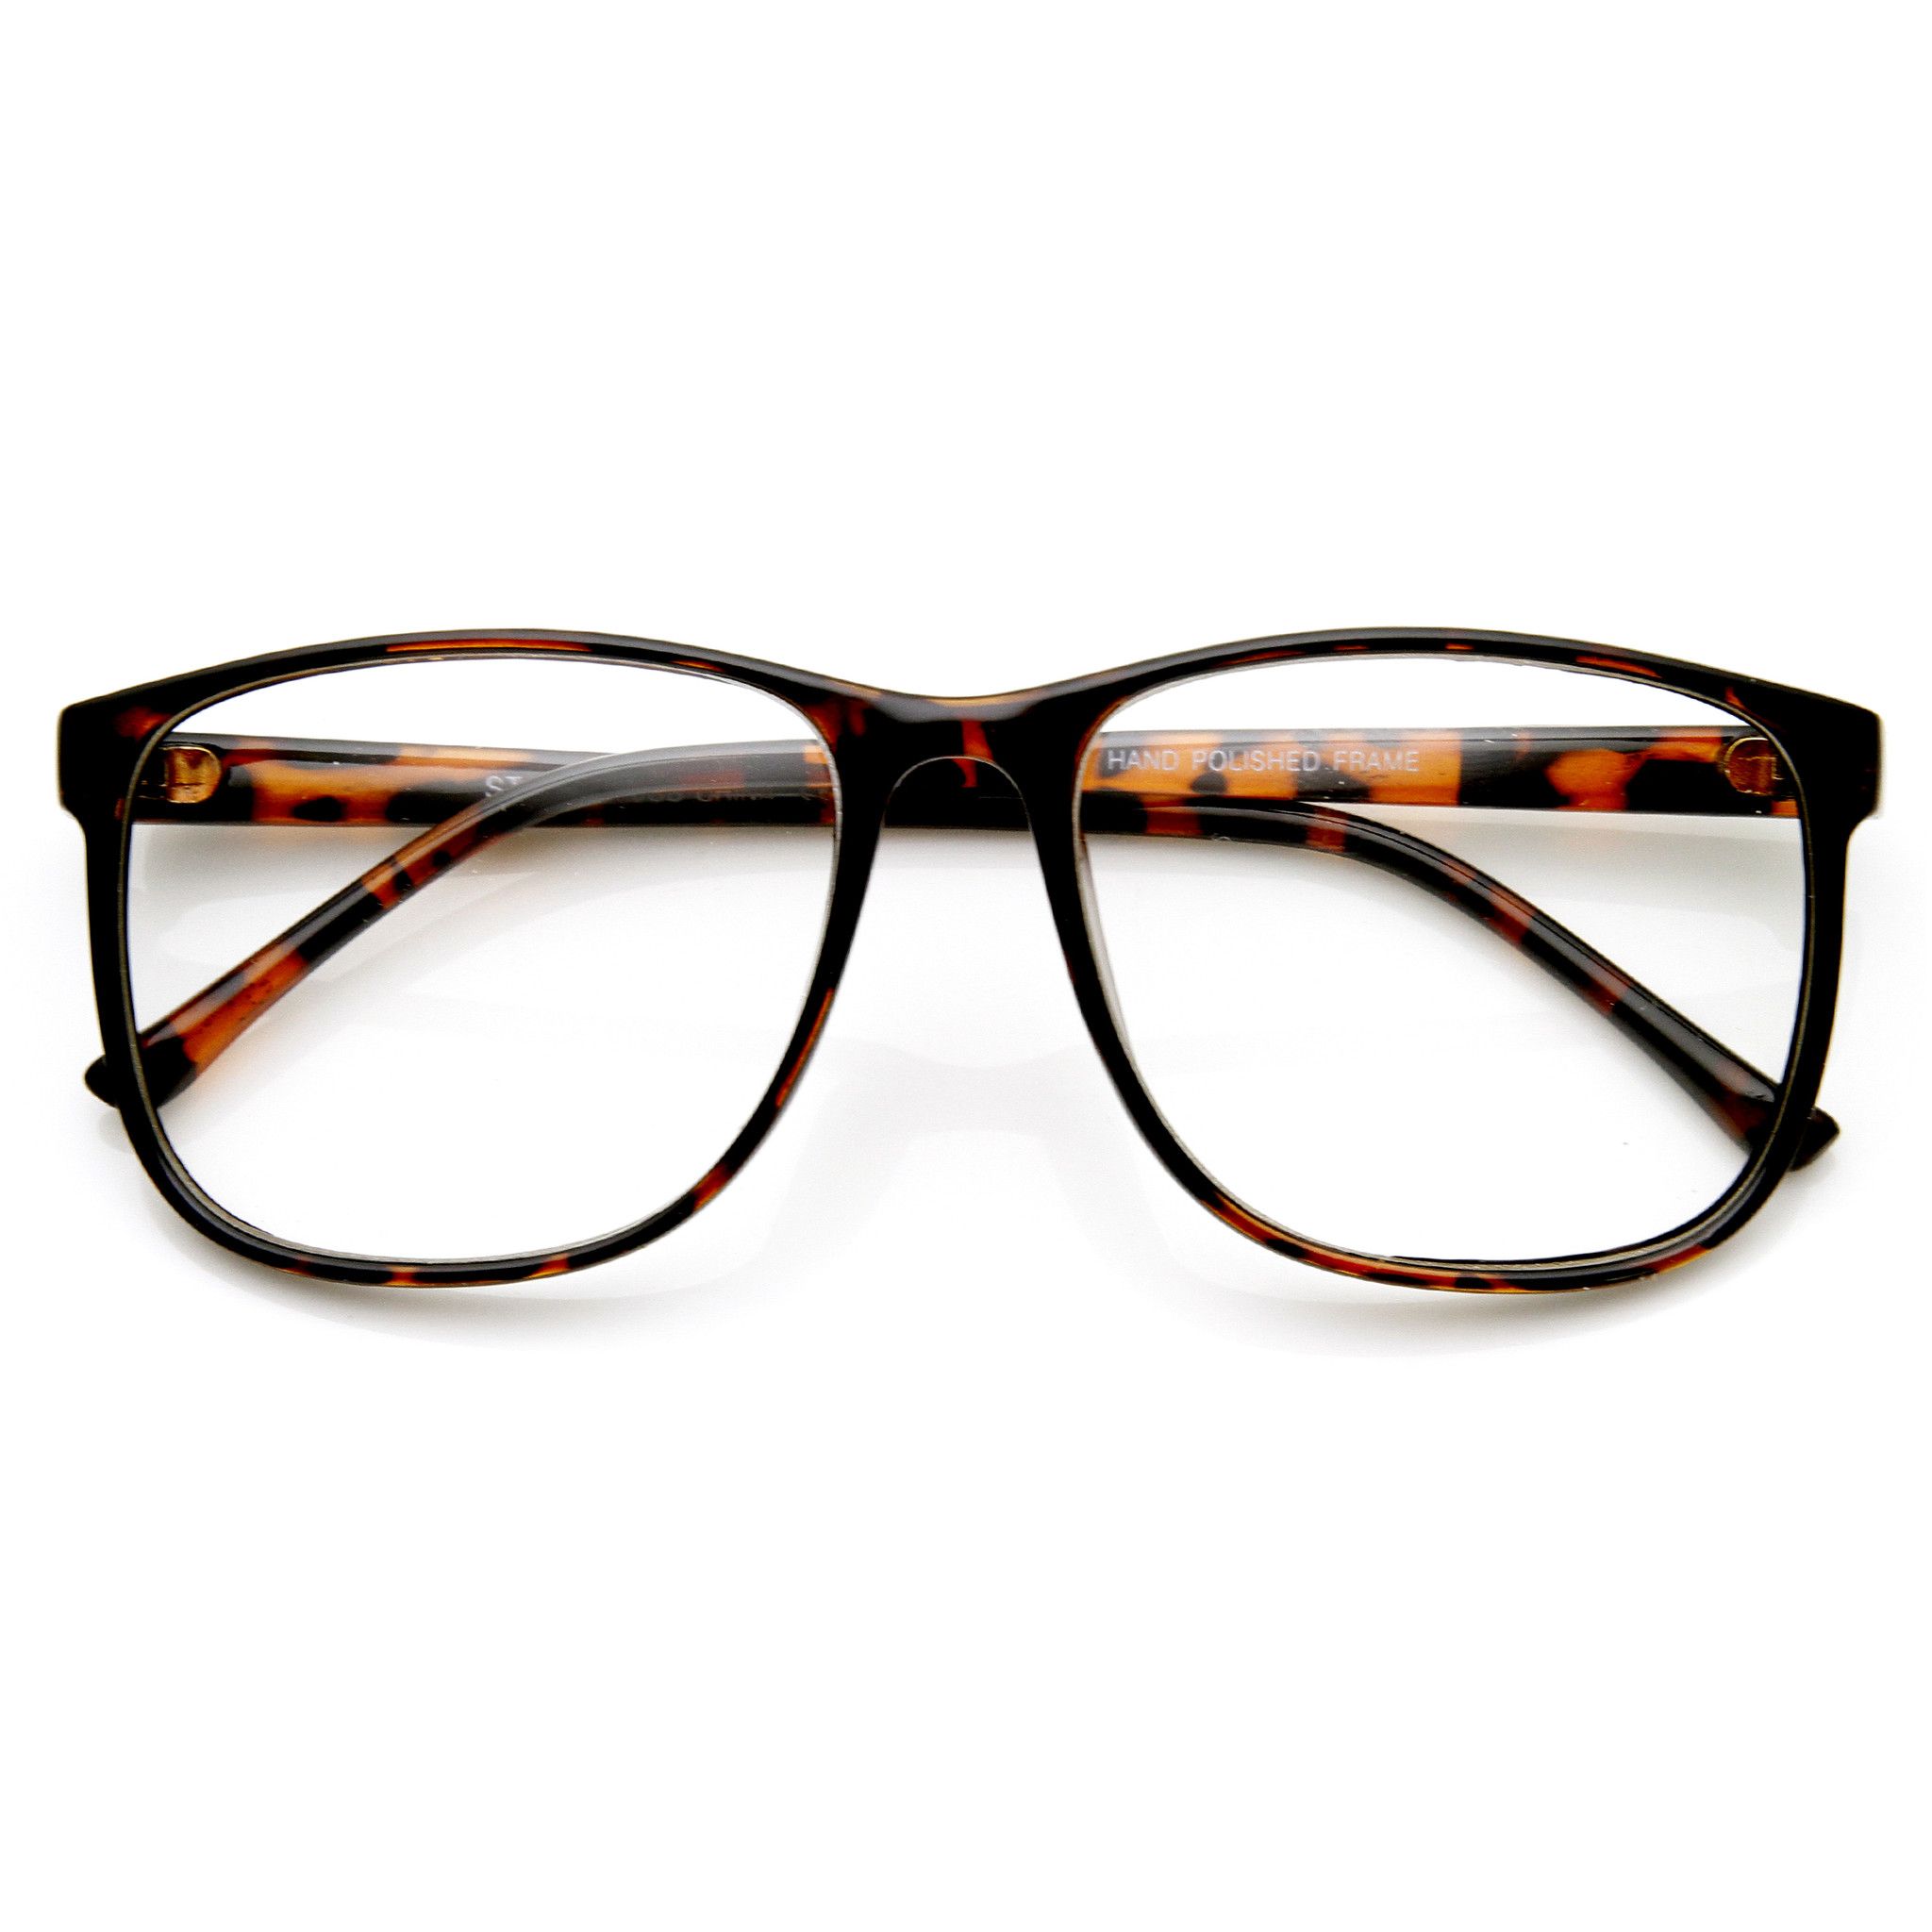 Retro hipster glasses